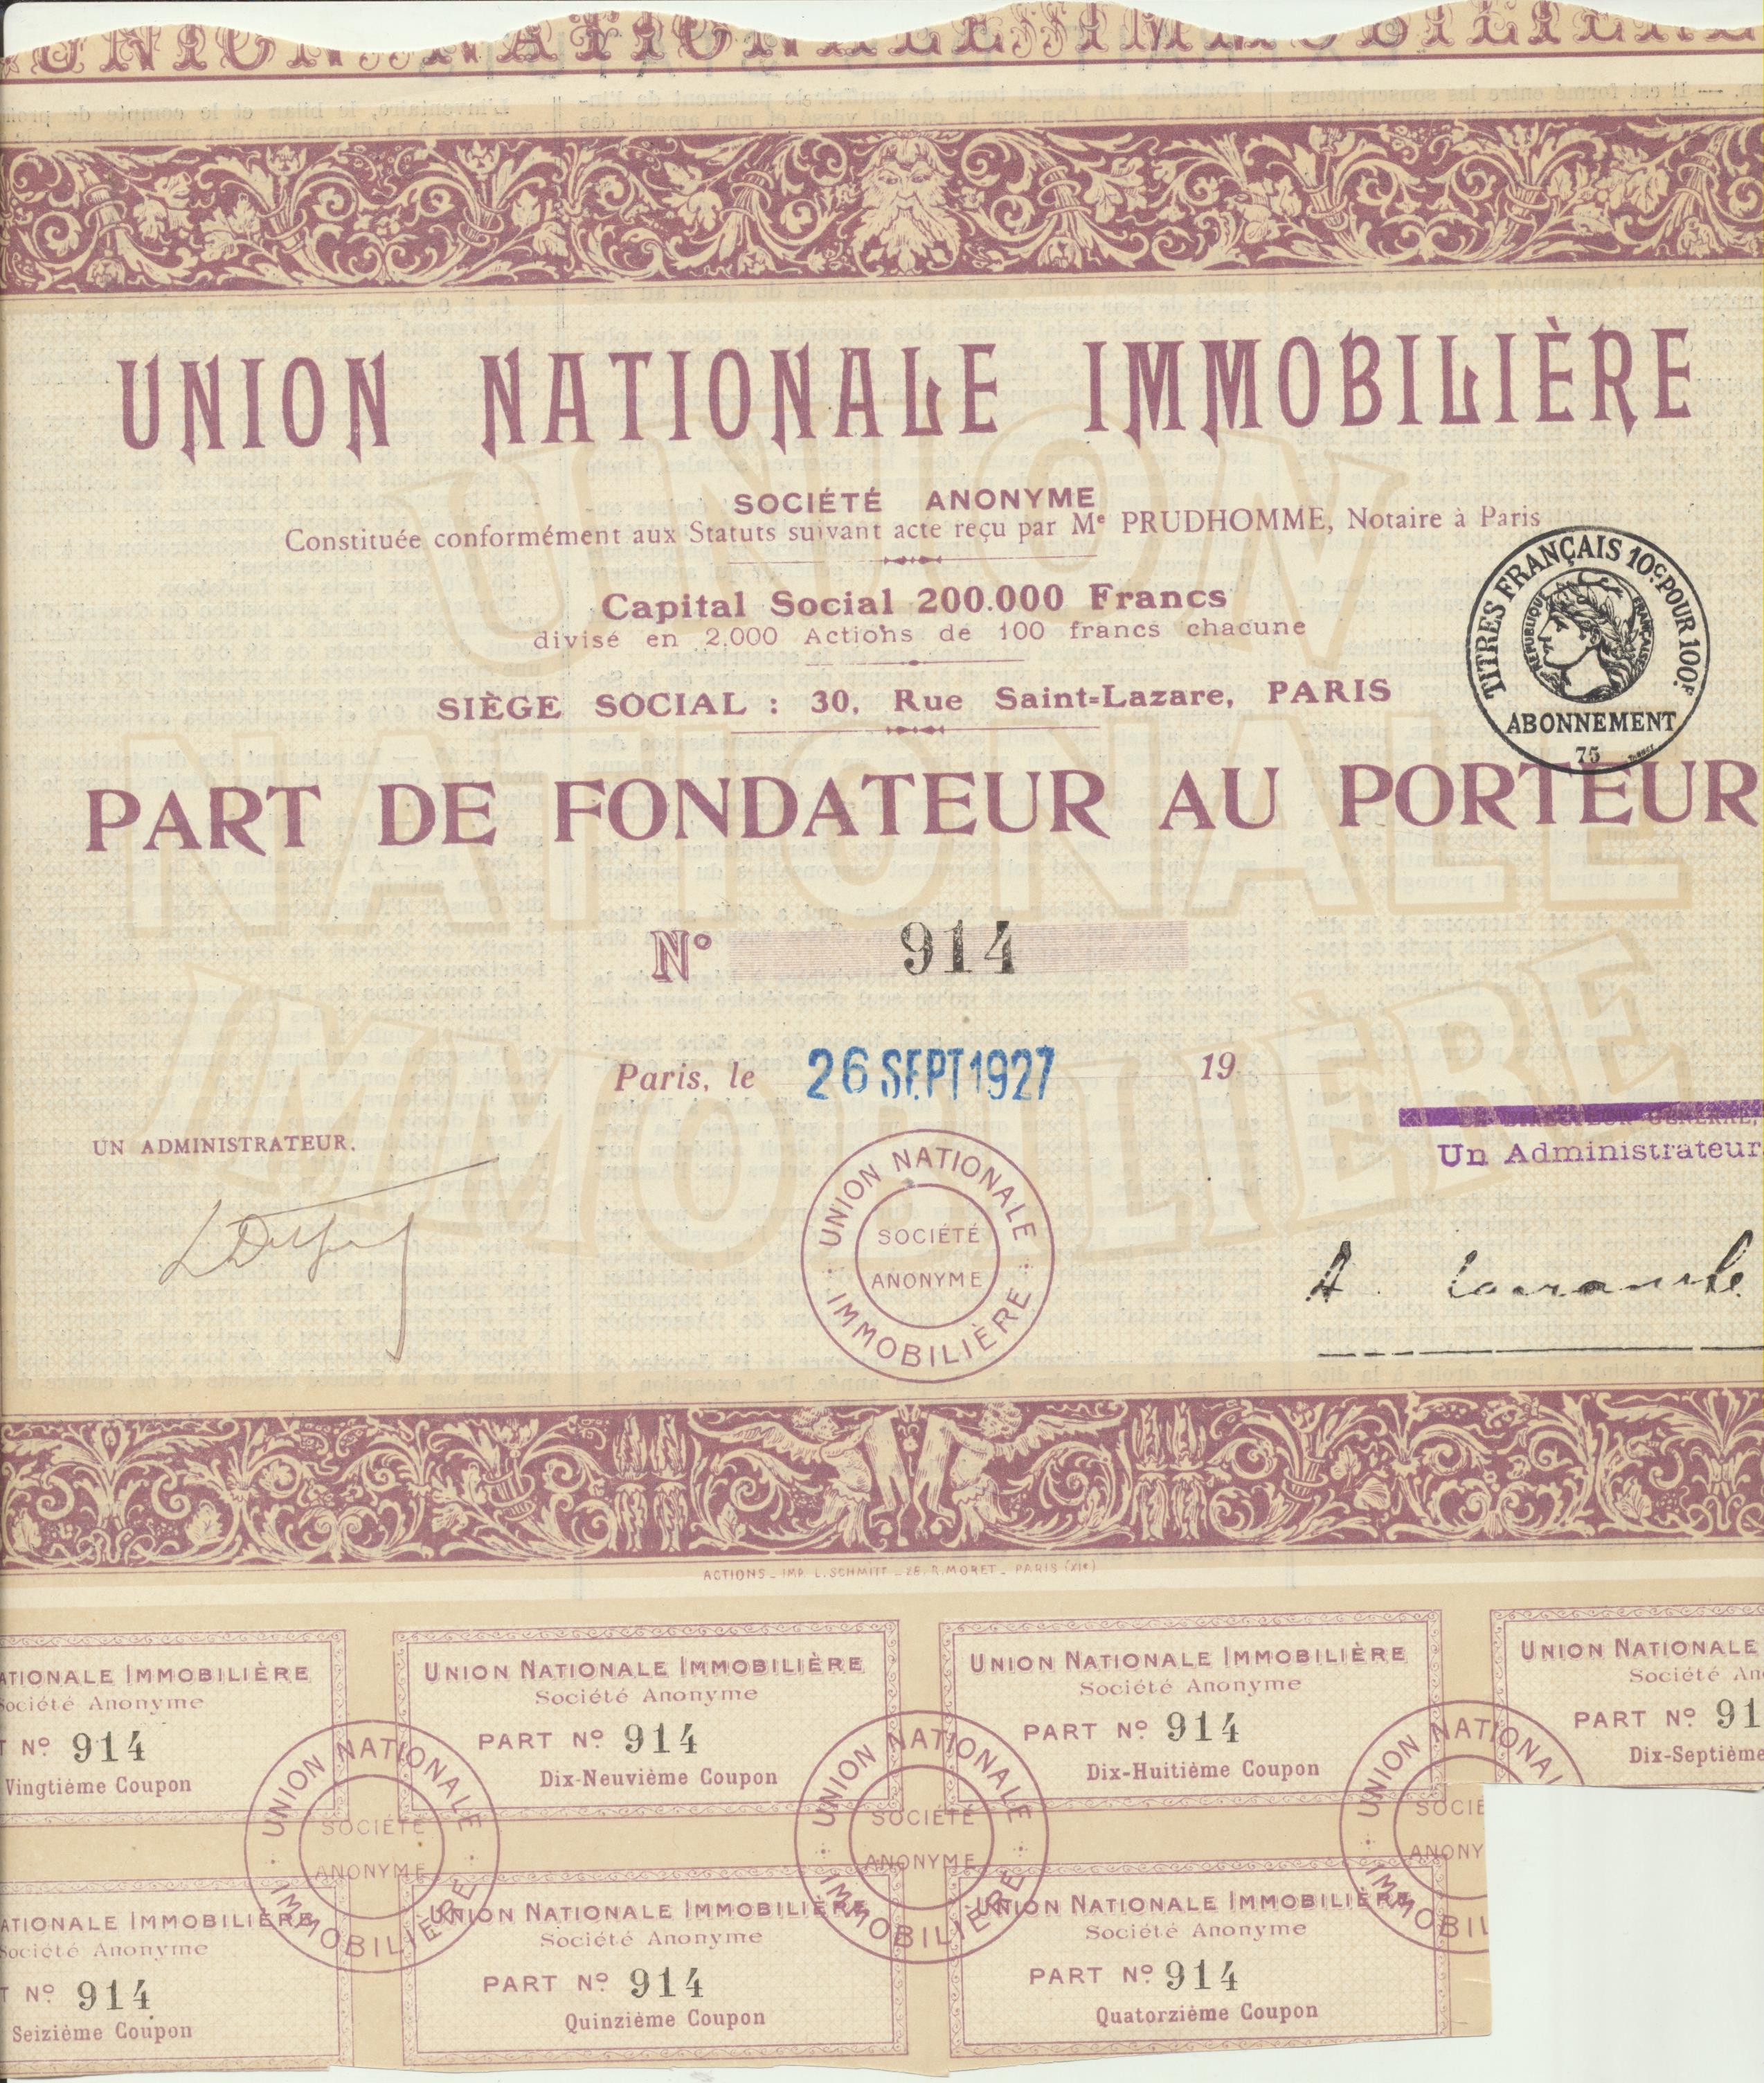 Acción Unión nationale Immobiliere, Paris, 1927